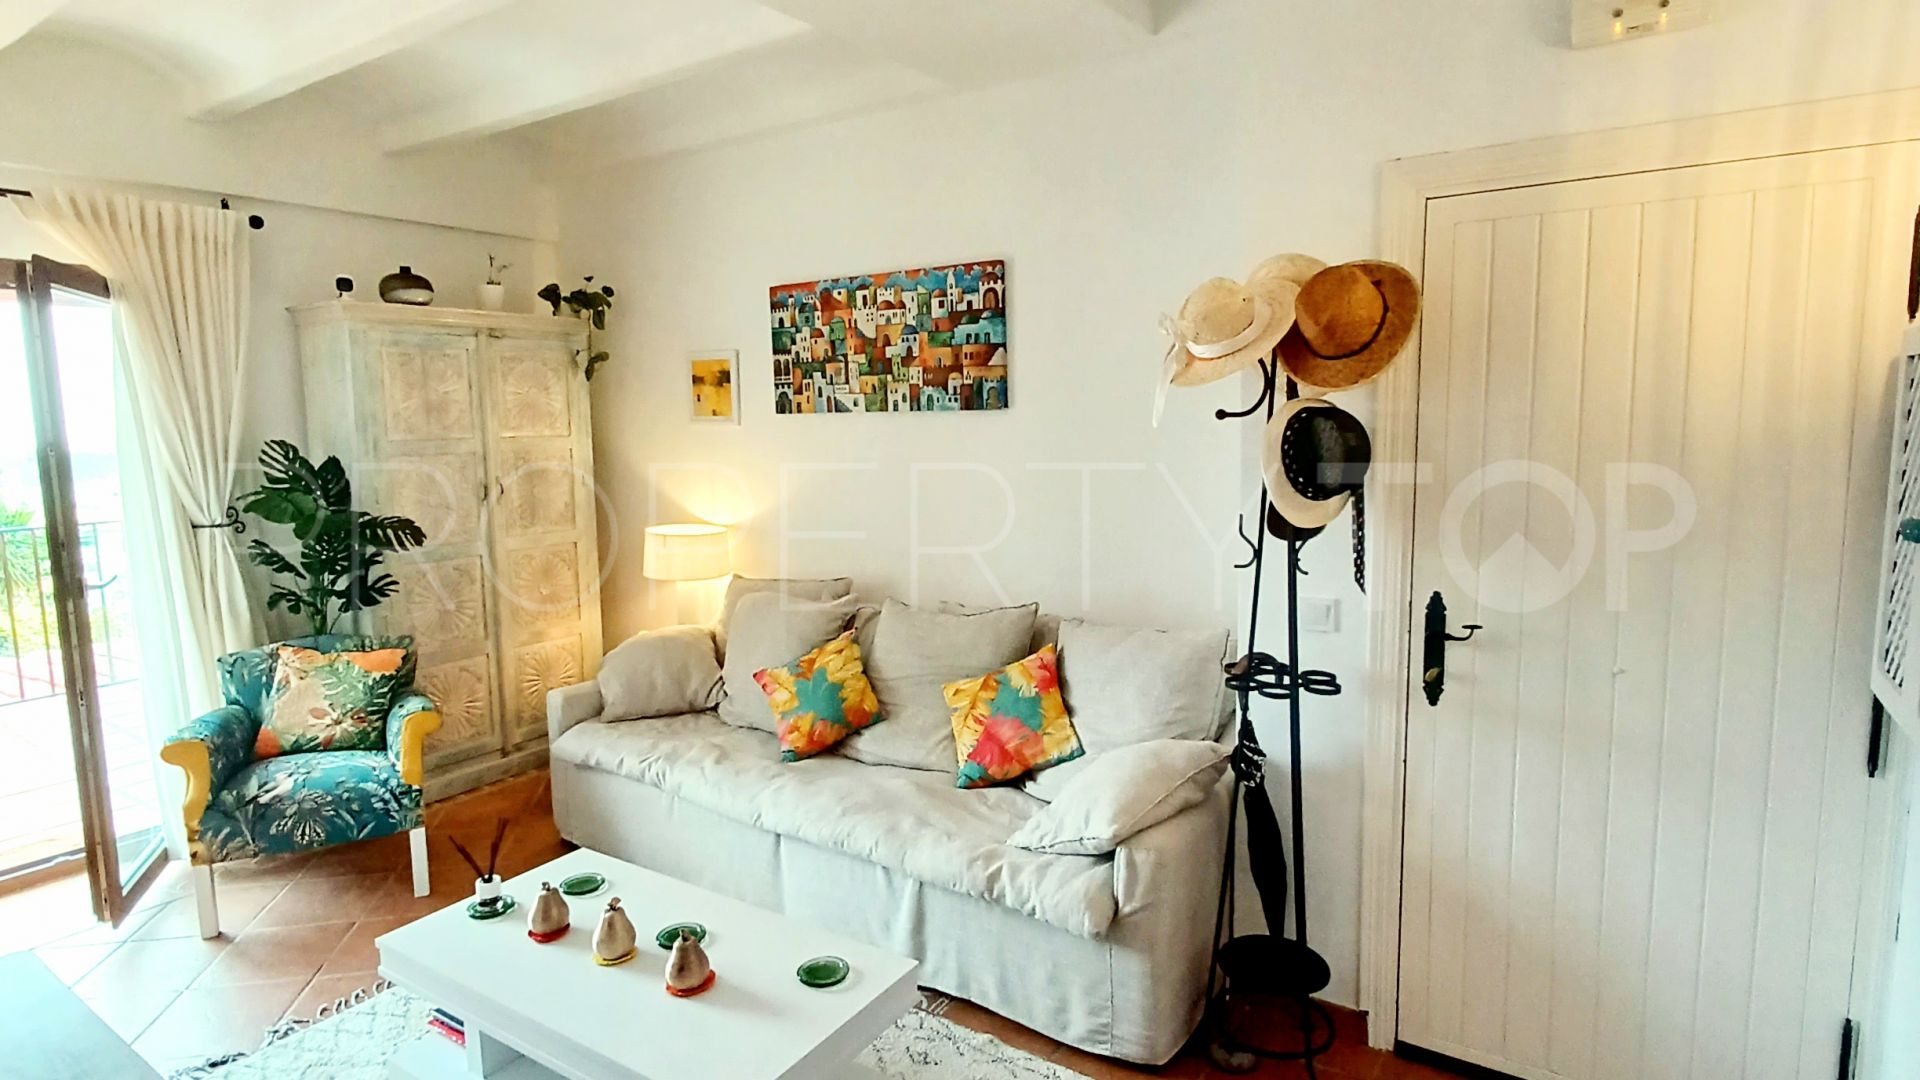 For sale apartment in Alcaidesa Costa